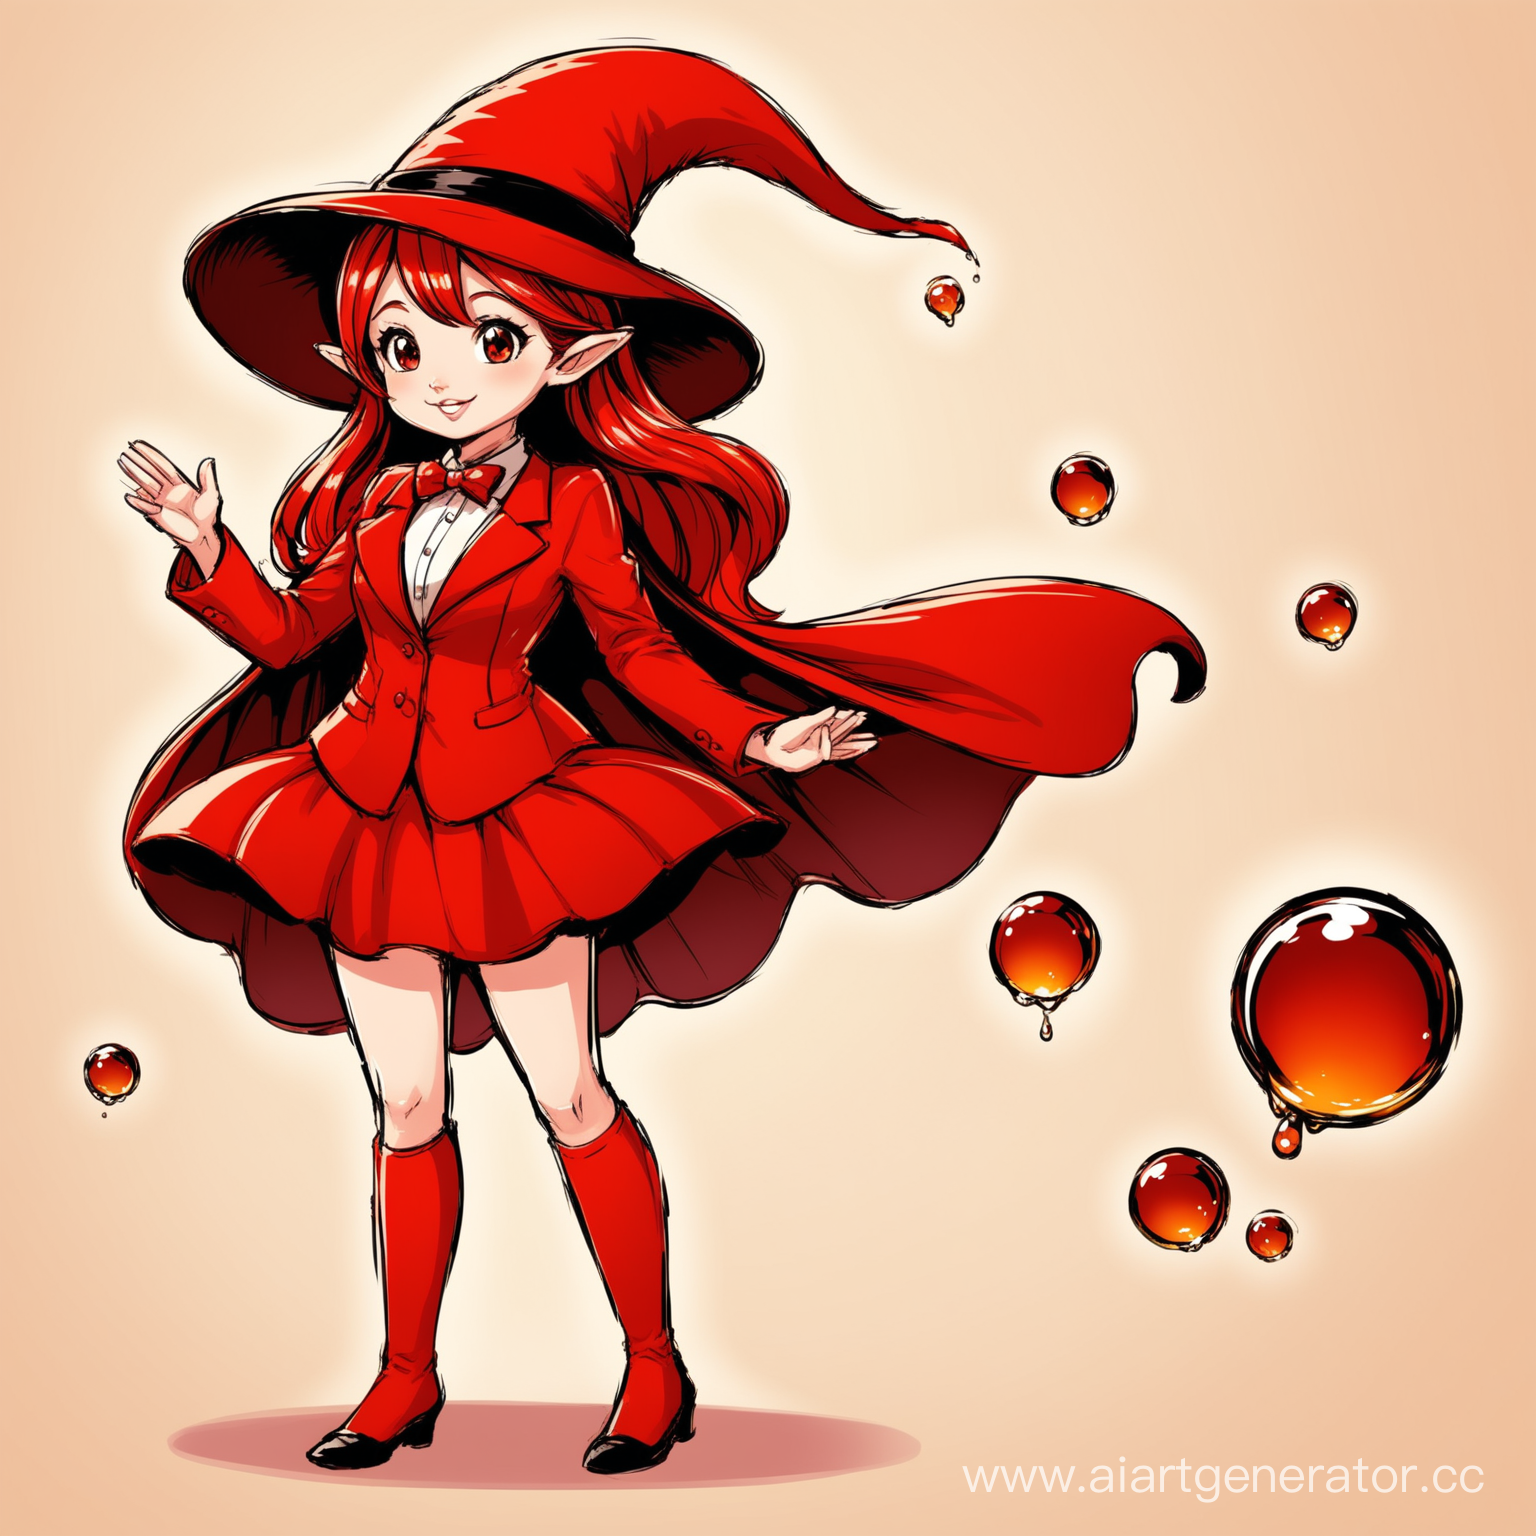 создай маленькую капельку нефти как персонаж для сказки, ее одежда: шапочка и костюм пусть будут красного цвета, в мультяшном стиле 